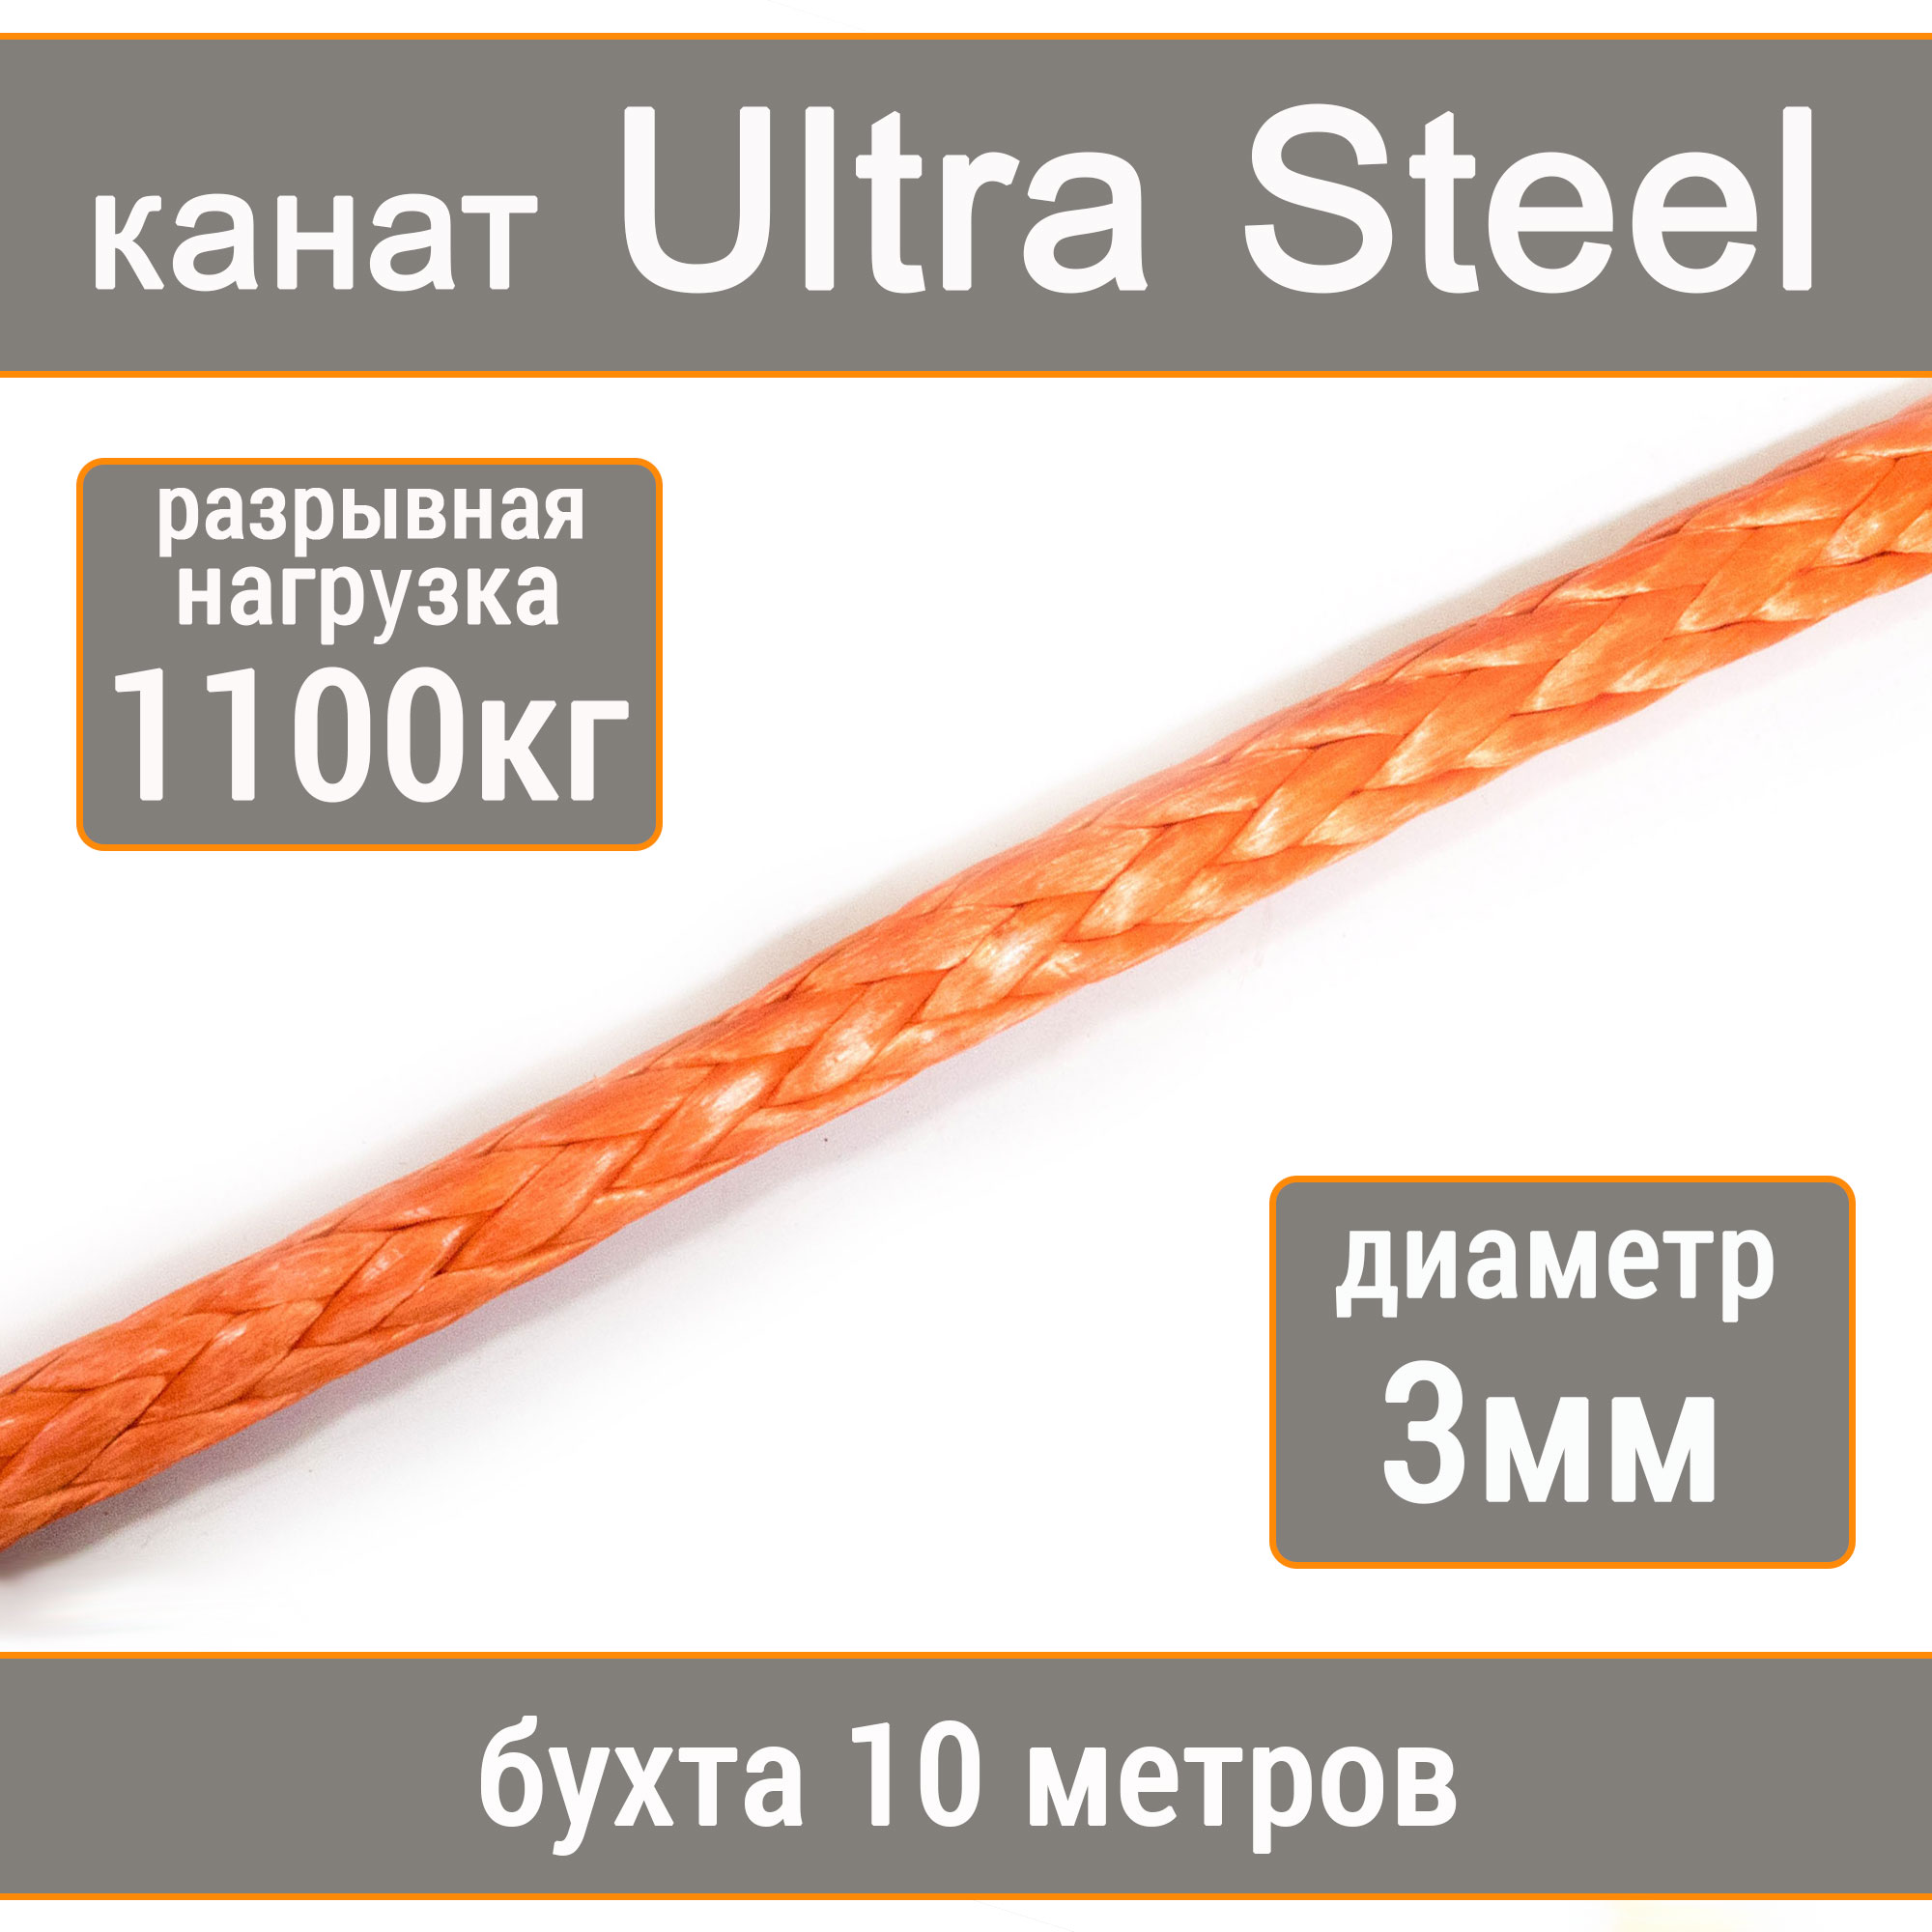 Высокопрочный синтетический канат UTX Ultra Steel 3мм р.н.1100кг, 007654321-103 flamingo игрушка для собак канат с узлами